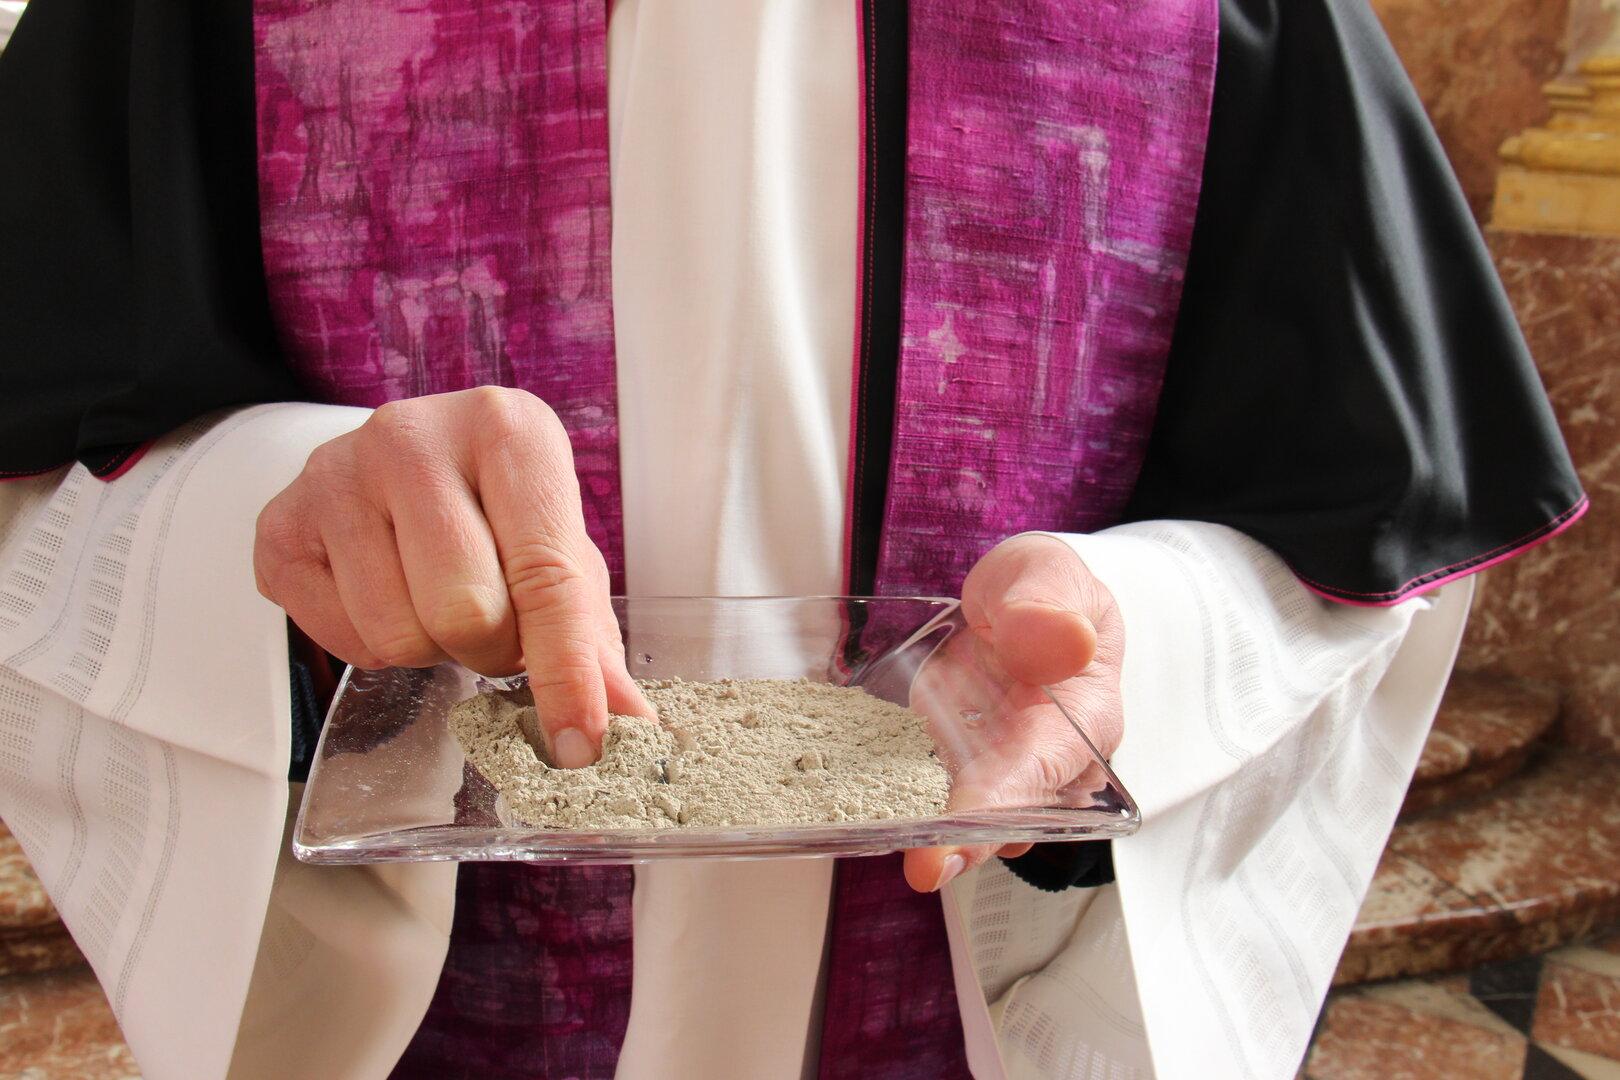 Priester in NÖ unter Drogenverdacht: Der Fall wird immer brisanter